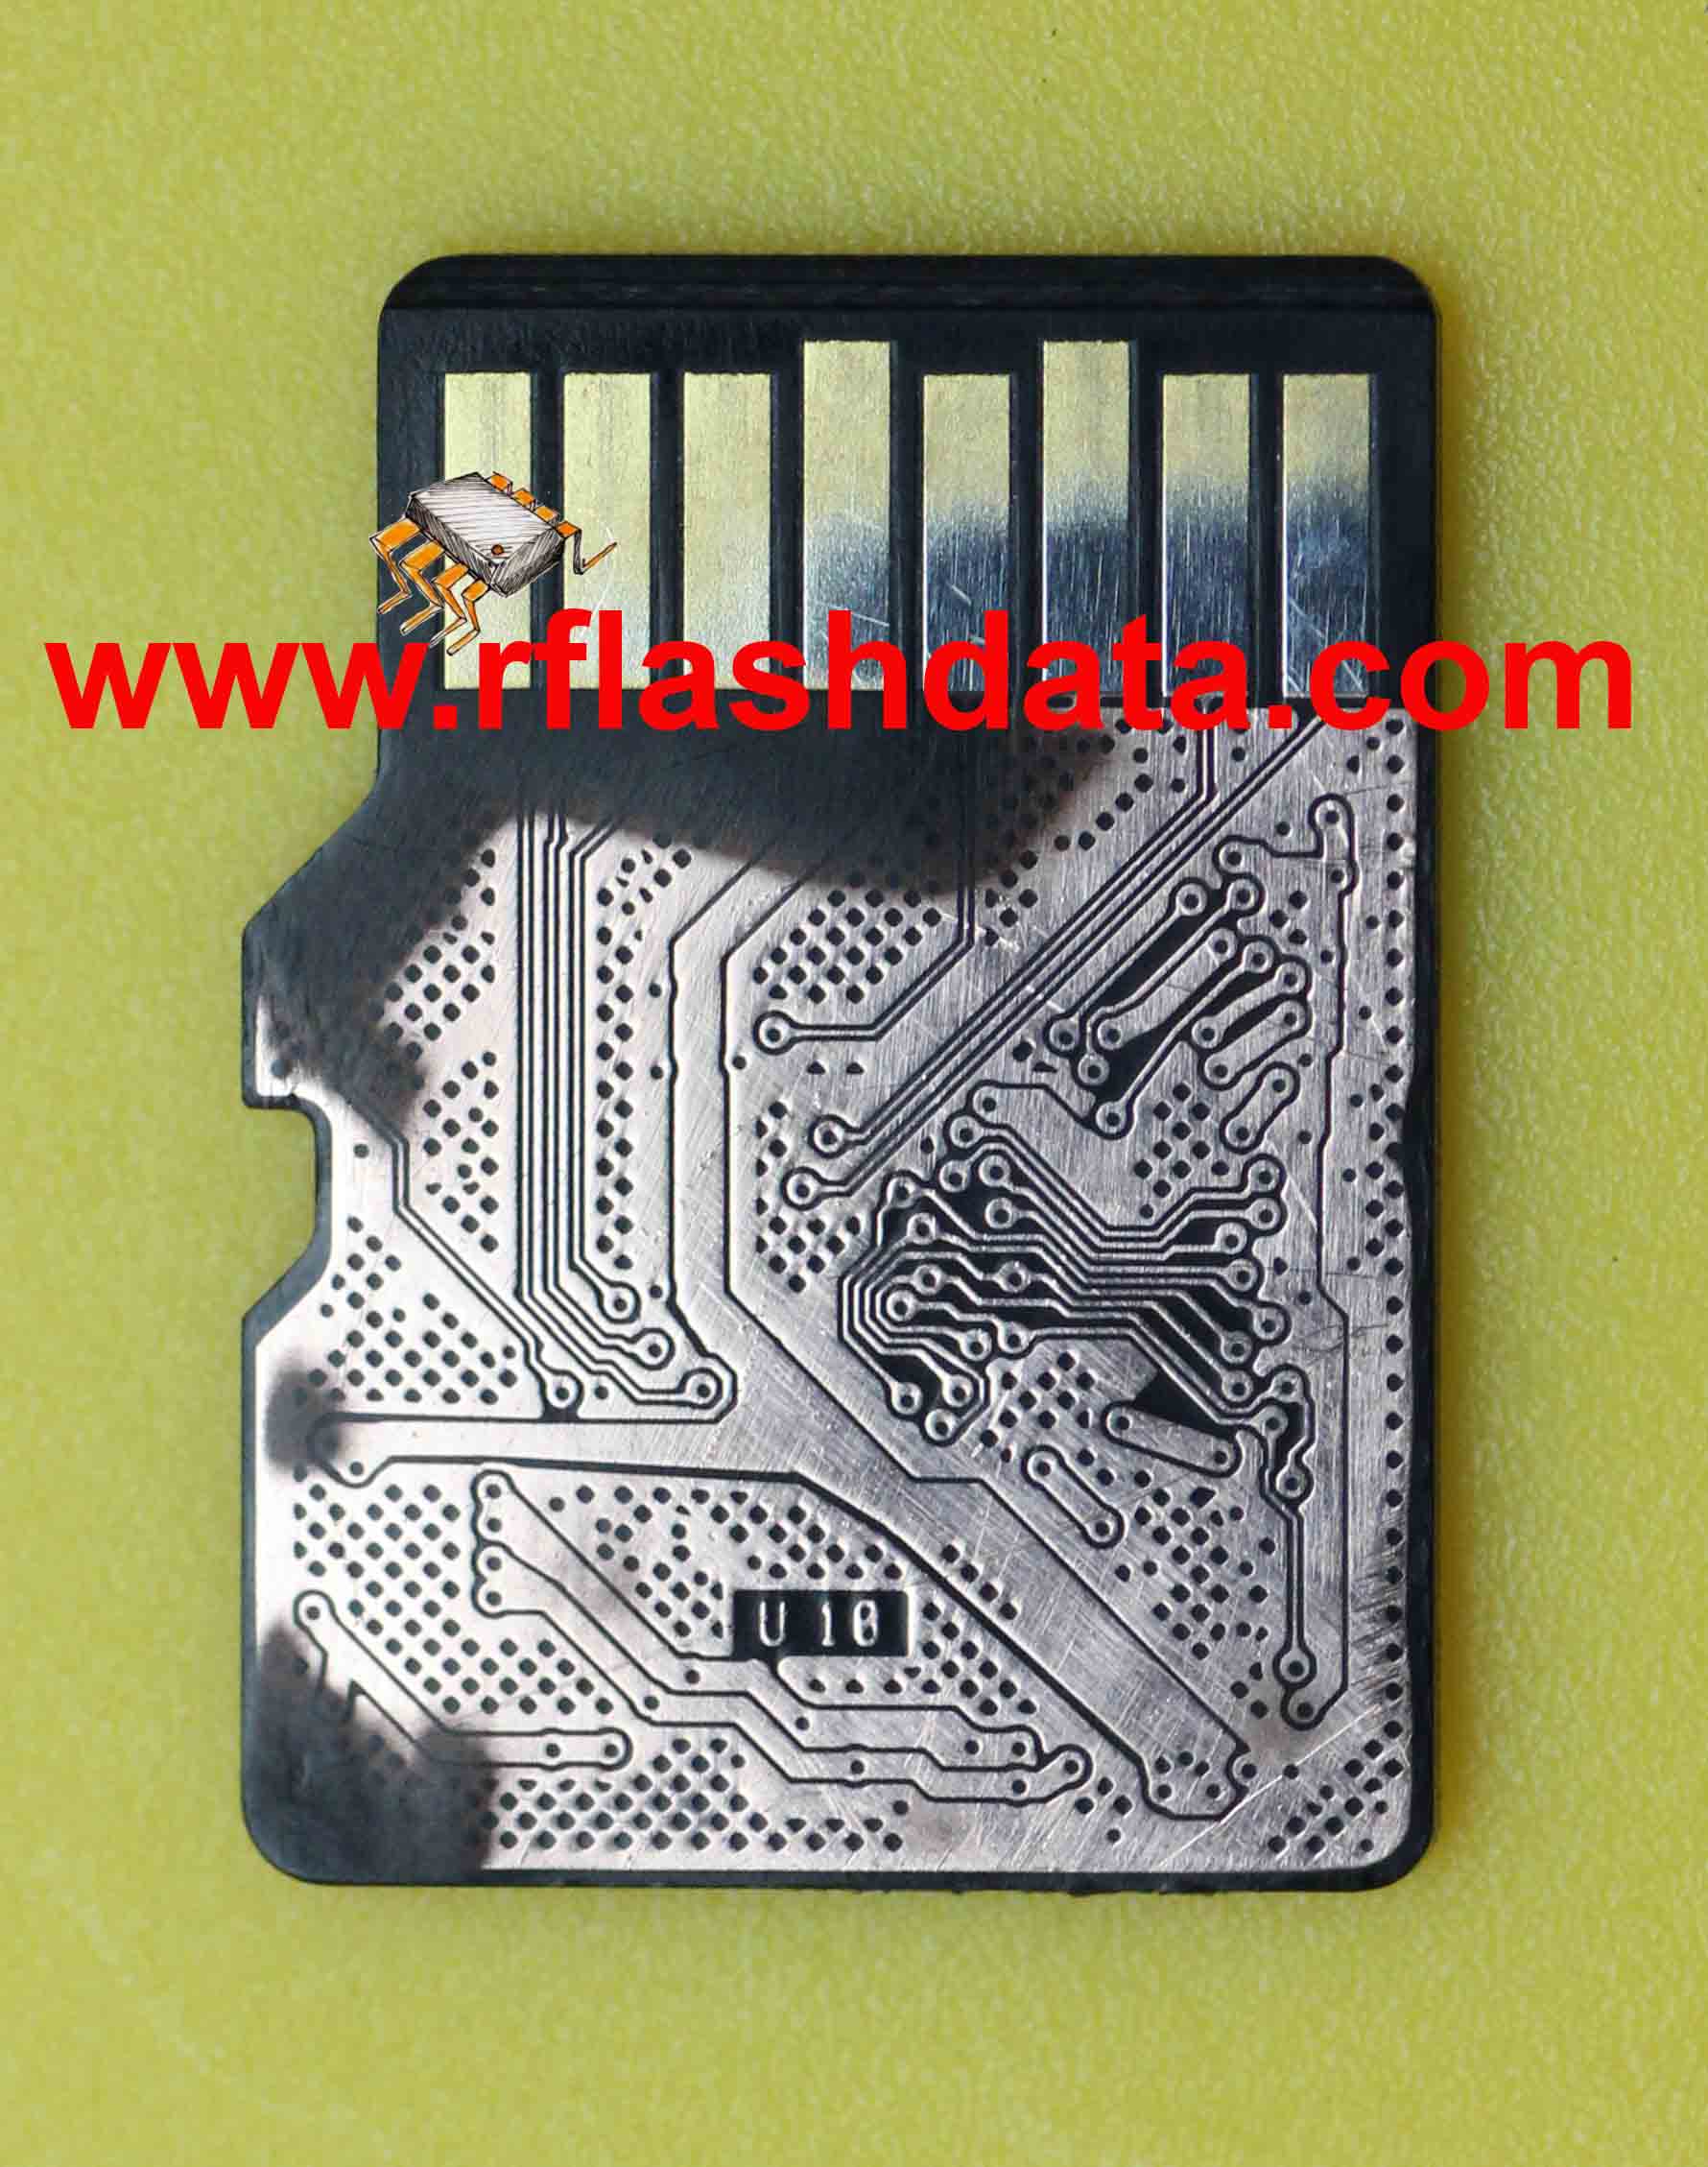 microSD pinout